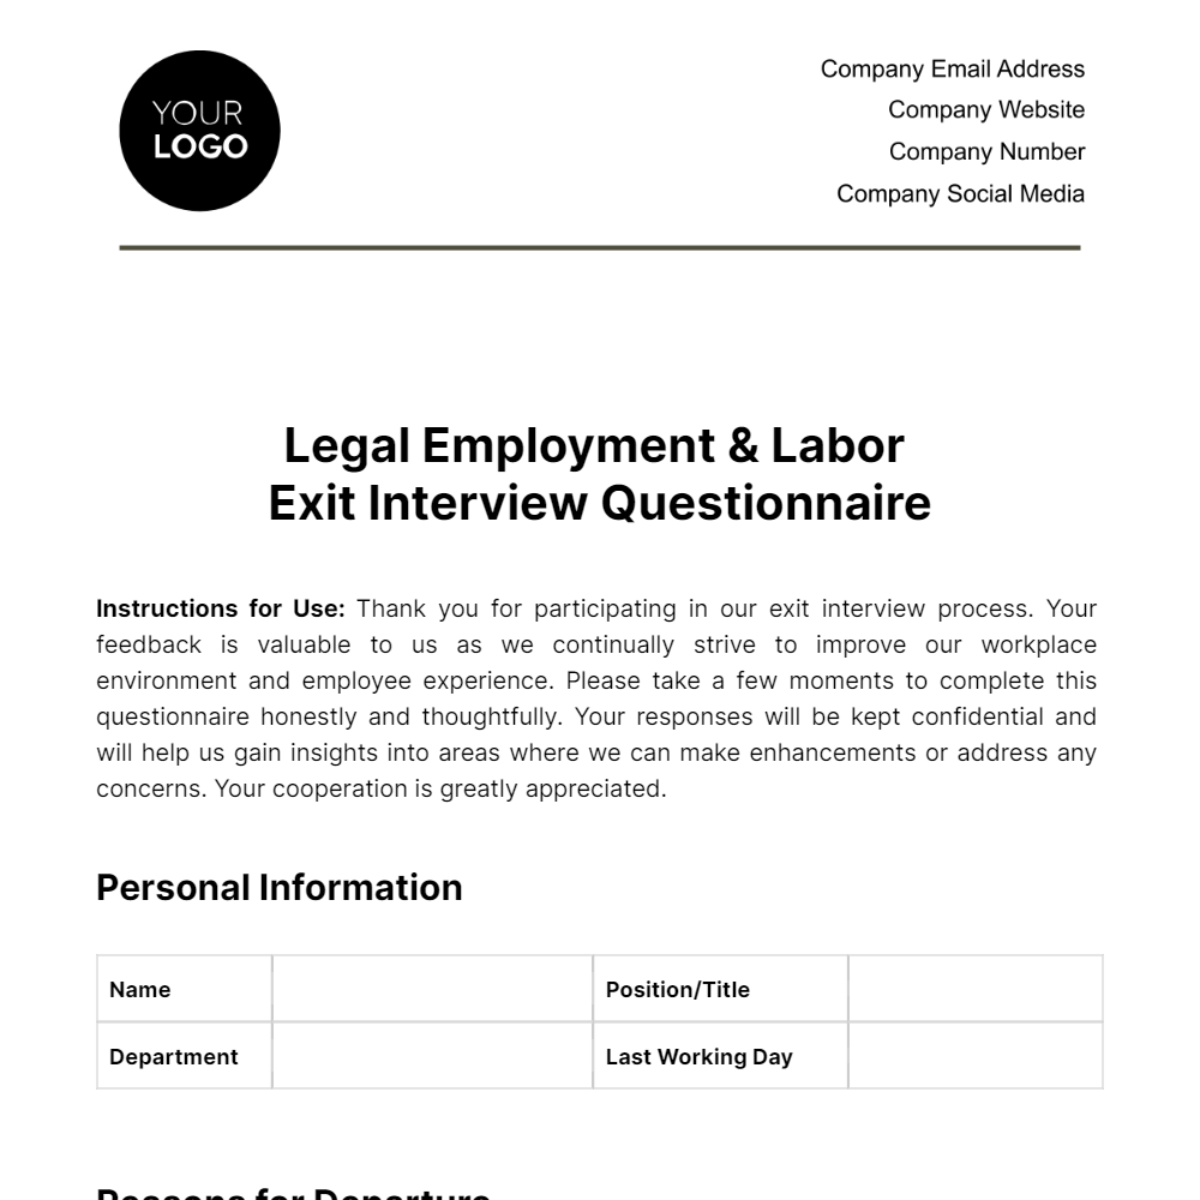 Legal Employment & Labor Exit Interview Questionnaire Template